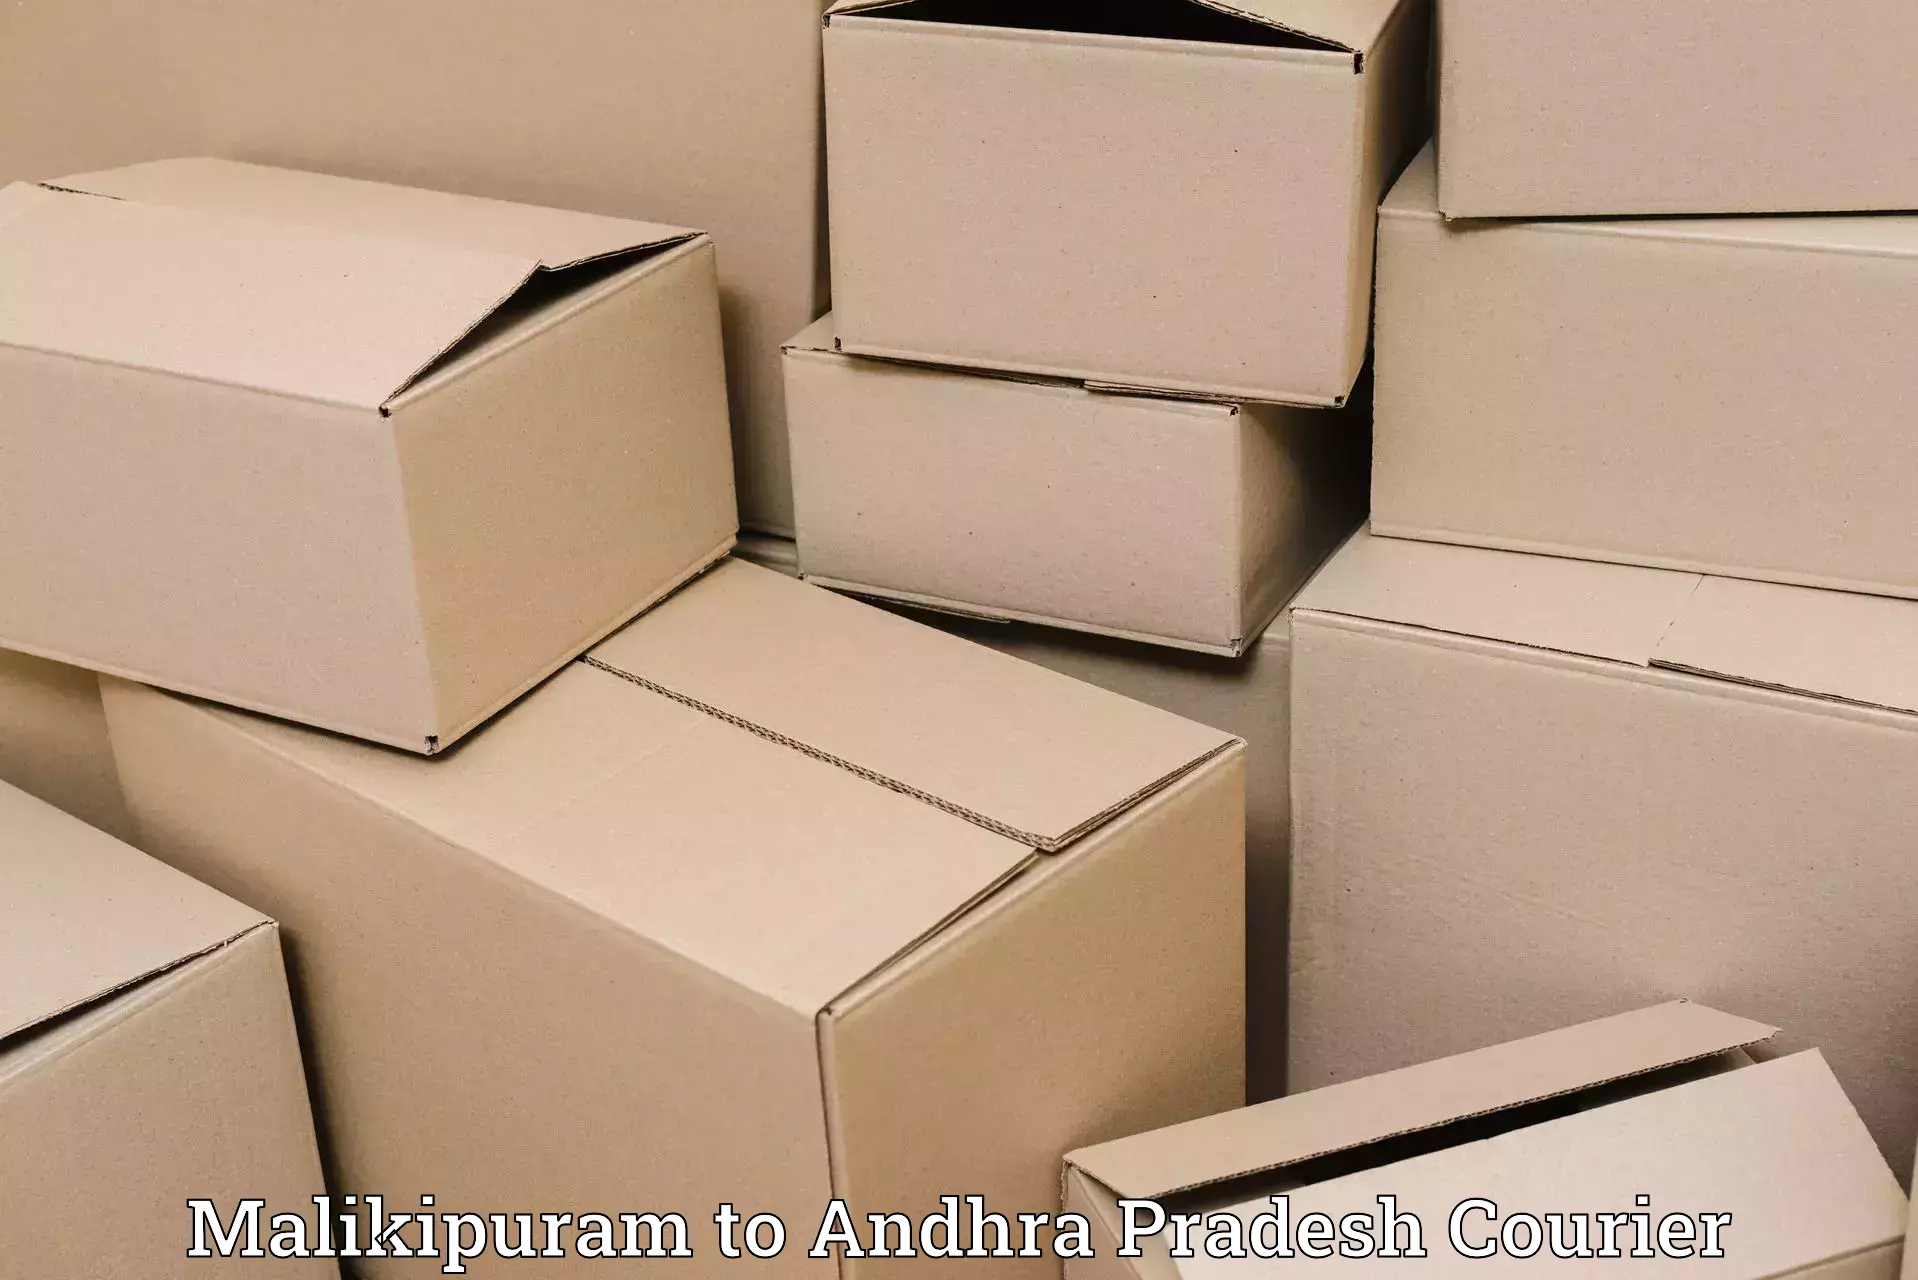 Efficient shipping platforms in Malikipuram to Atmakur Nandyal